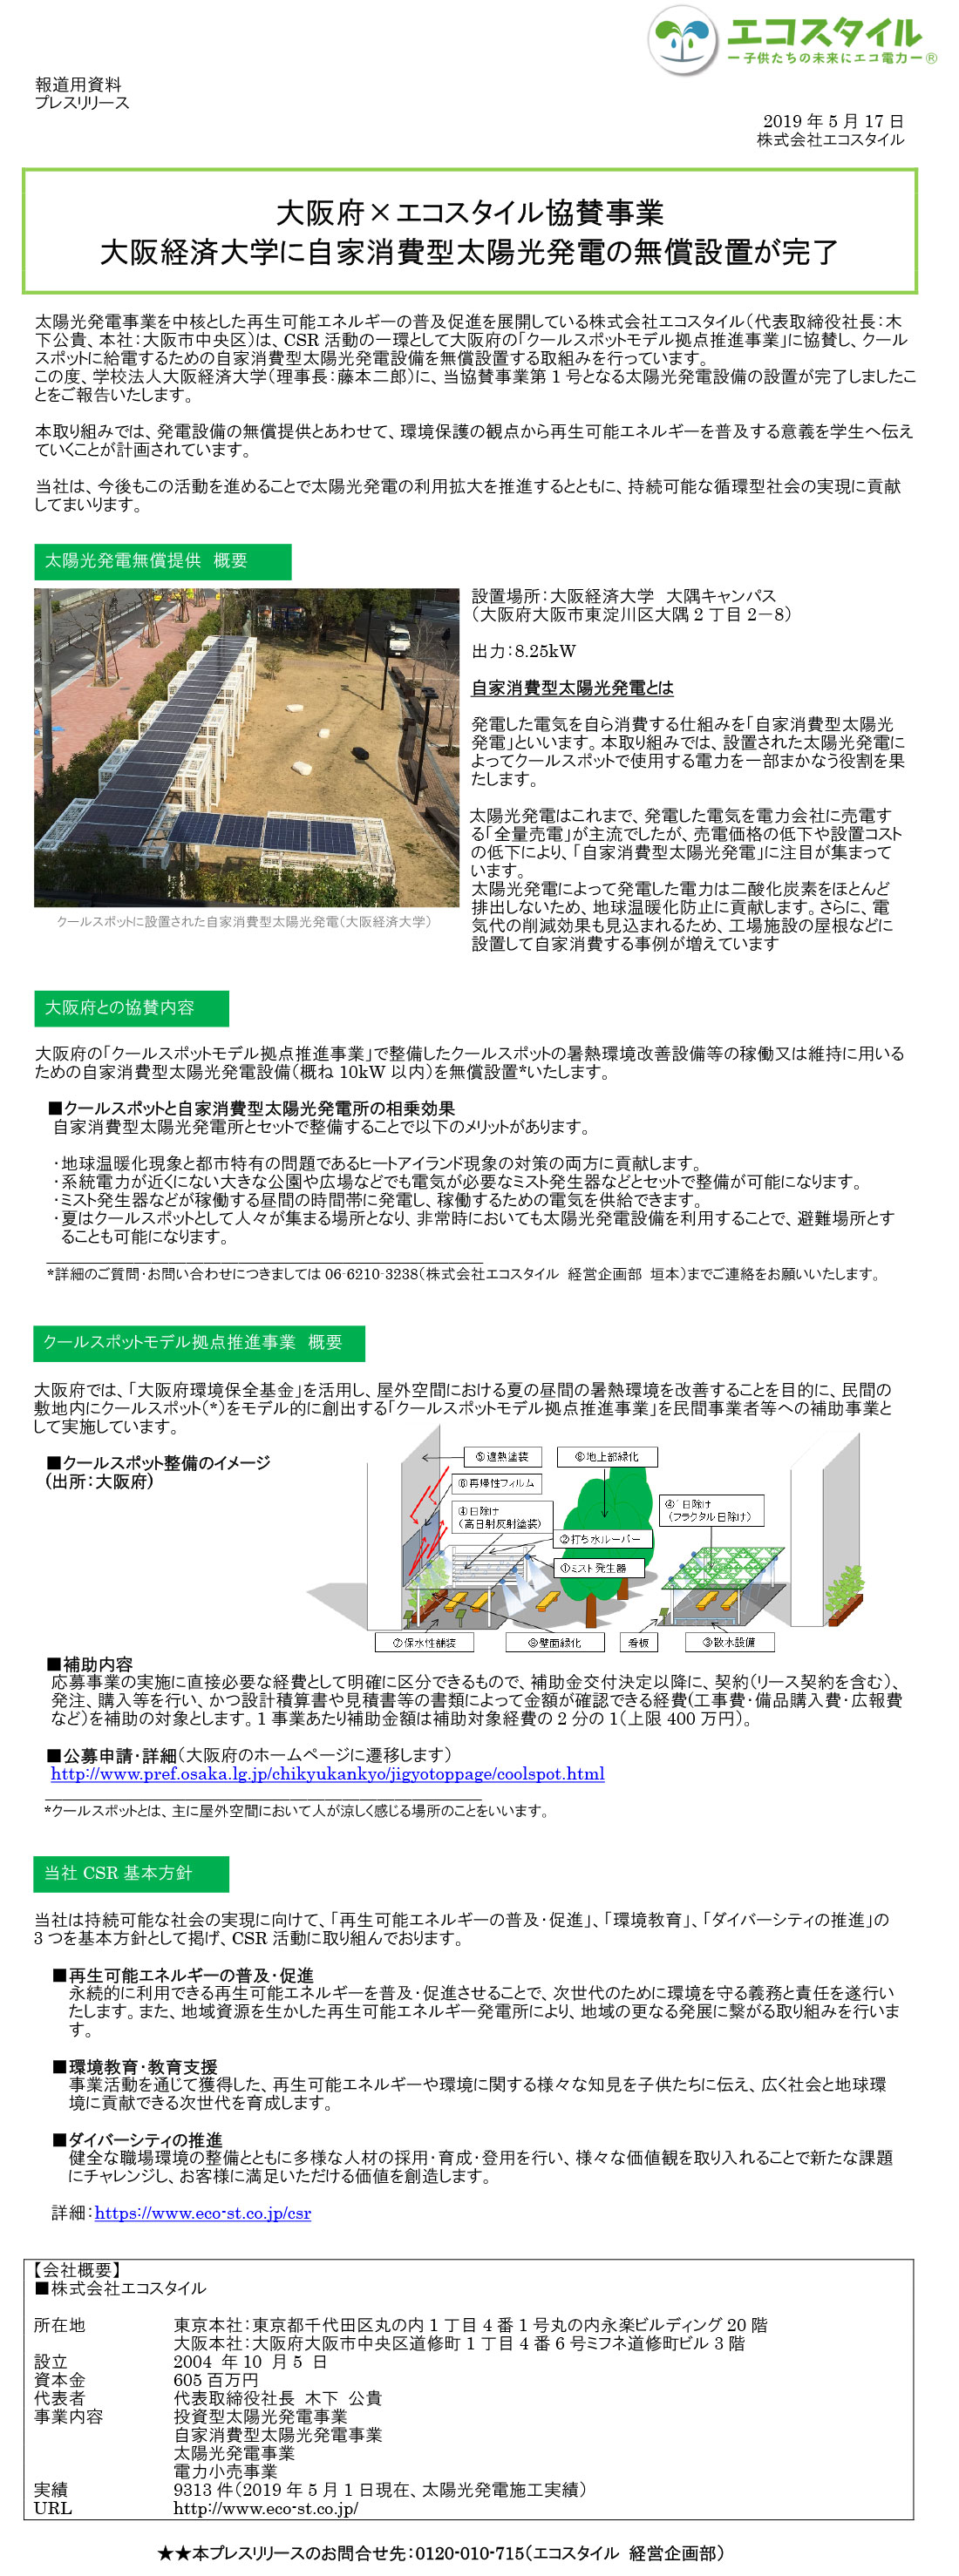 大阪府×エコスタイル協賛事業 大阪経済大学に自家消費型太陽光発電の無償設置が完了